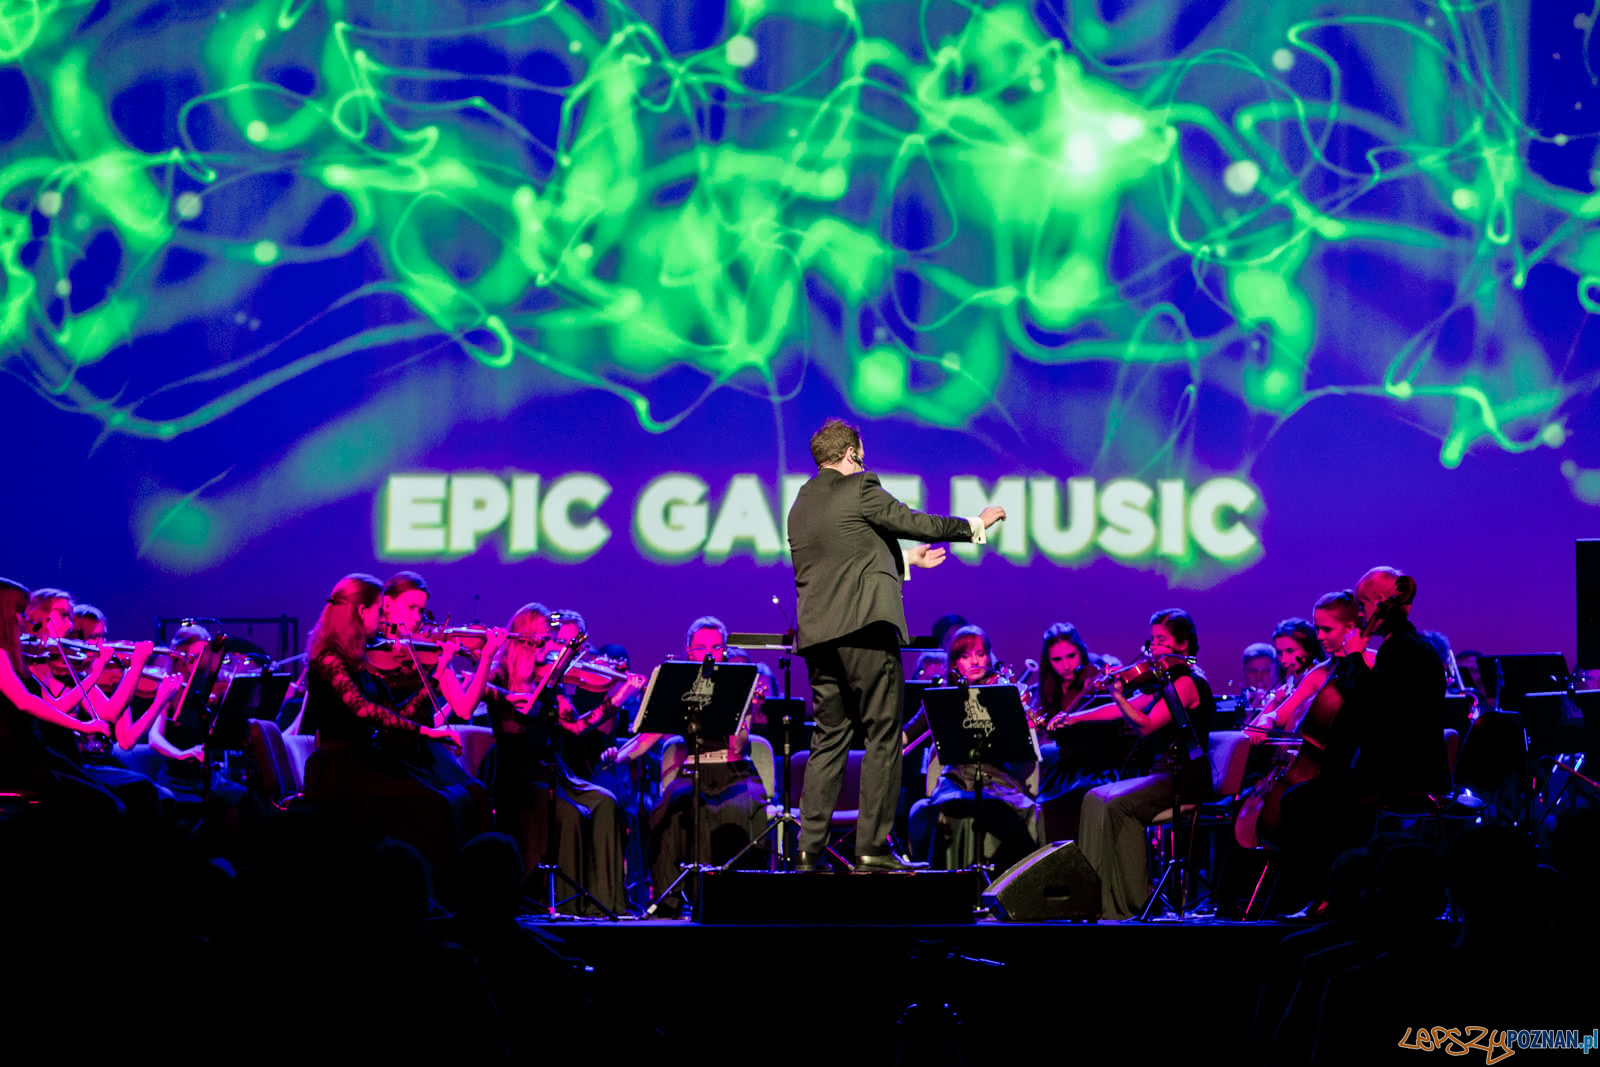 PGA: "Epic Game Music" w Sali Ziemi na MTP - Poznań 12.10.2018  Foto: LepszyPOZNAN.pl / Paweł Rychter